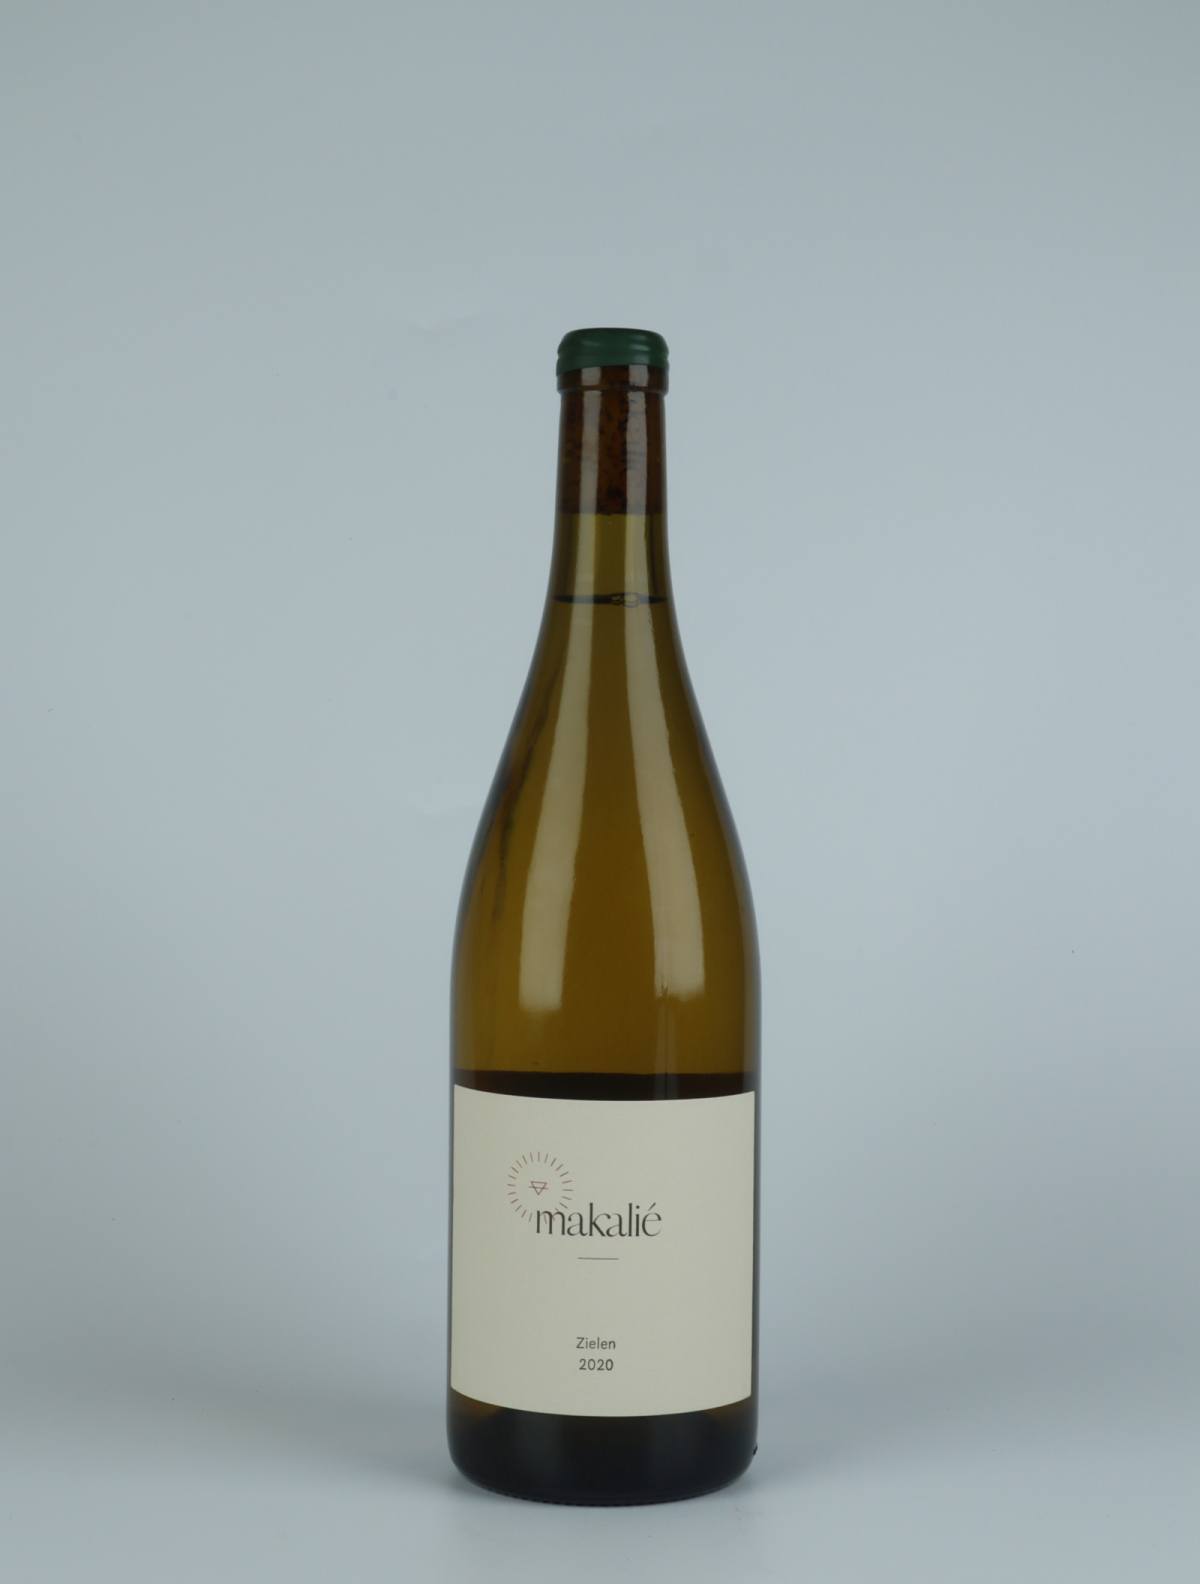 A bottle 2020 Zielen White wine from Makalié, Baden in Germany